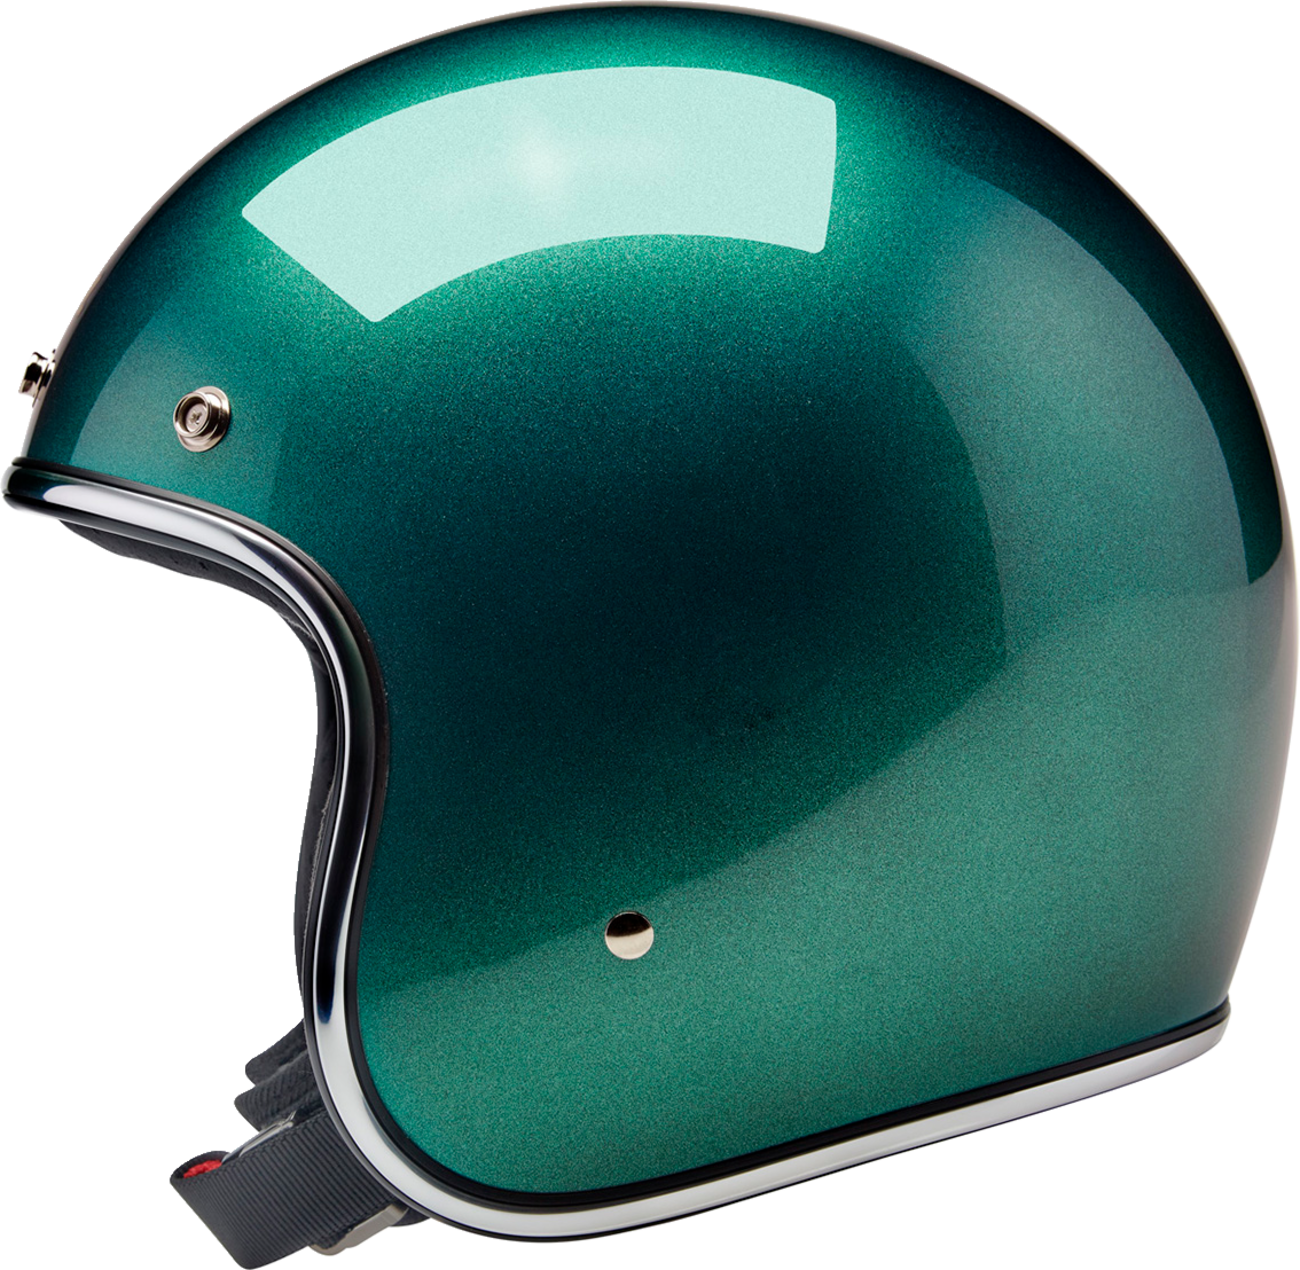 BILTWELL Bonanza Helmet - Metallic Catalina Green - XS 1001-358-201